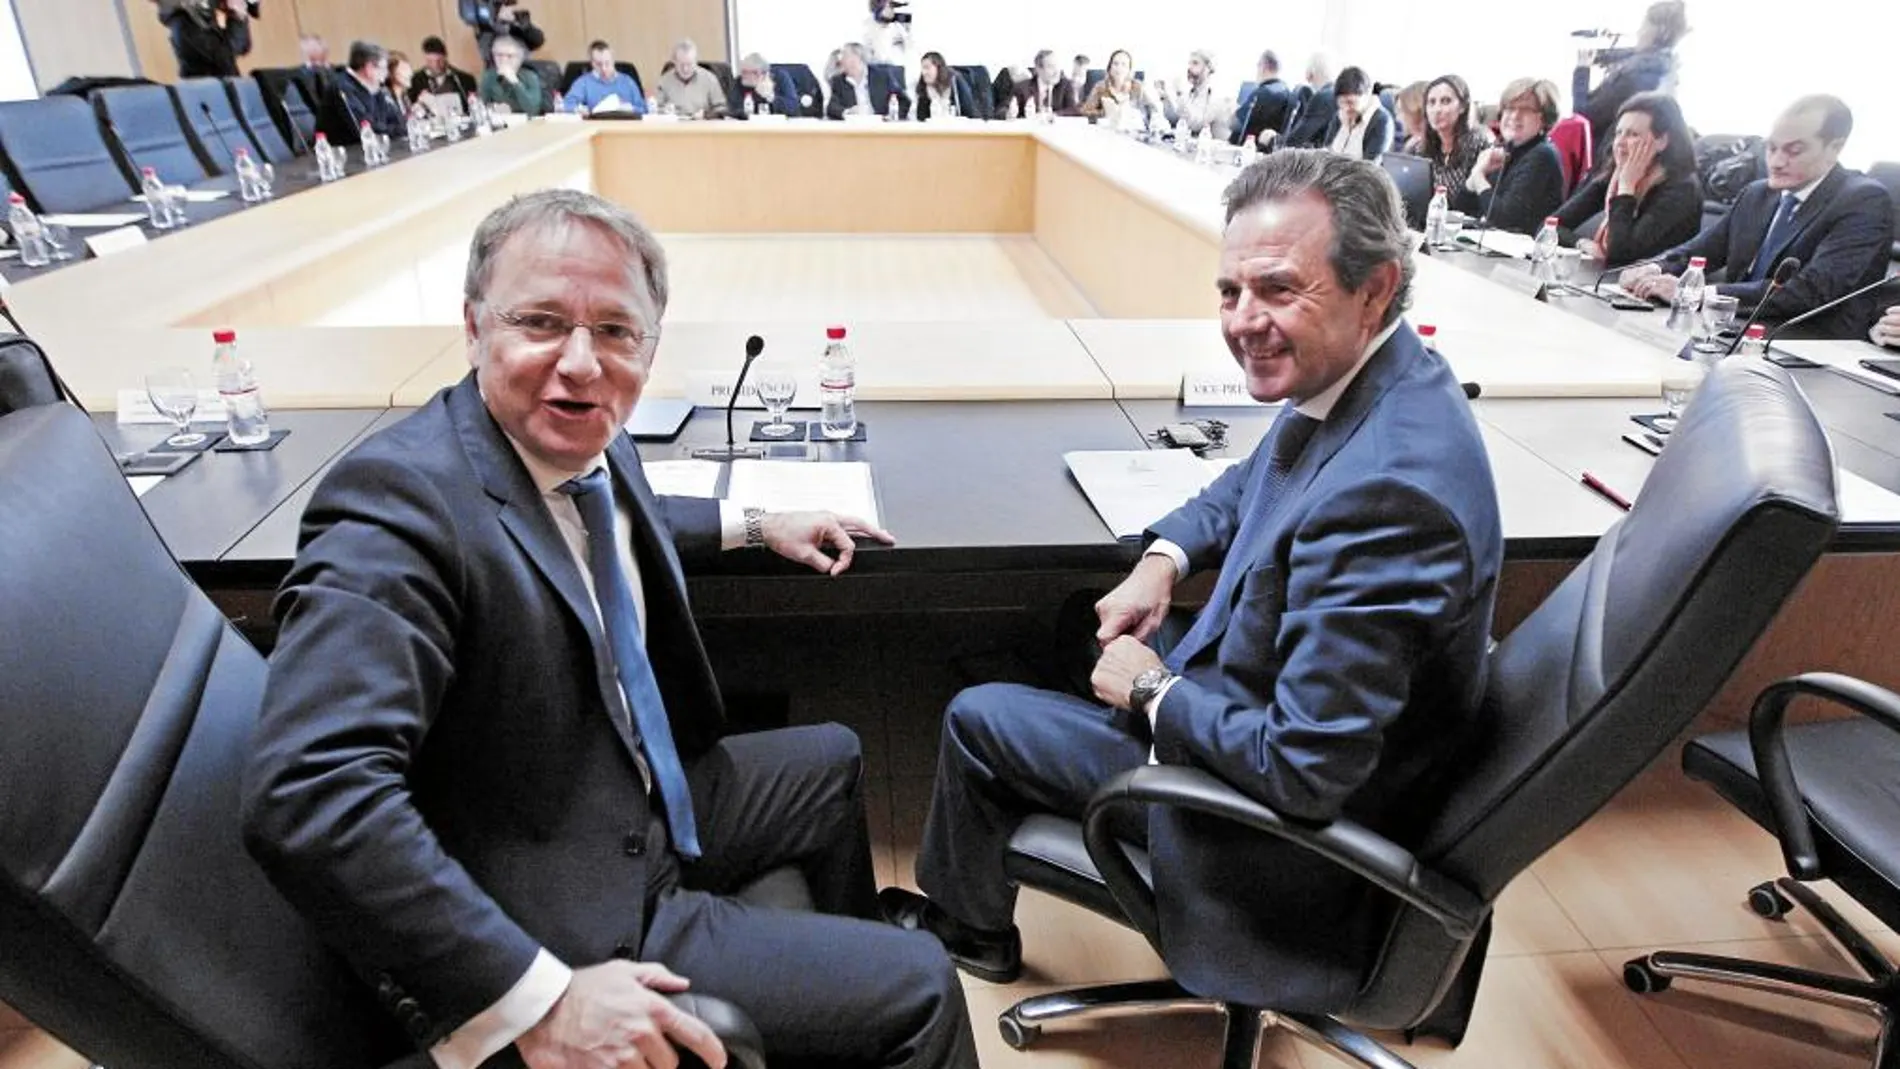 El conseller Moragues junto al secretario autonómico García Ribot antes de la reunión